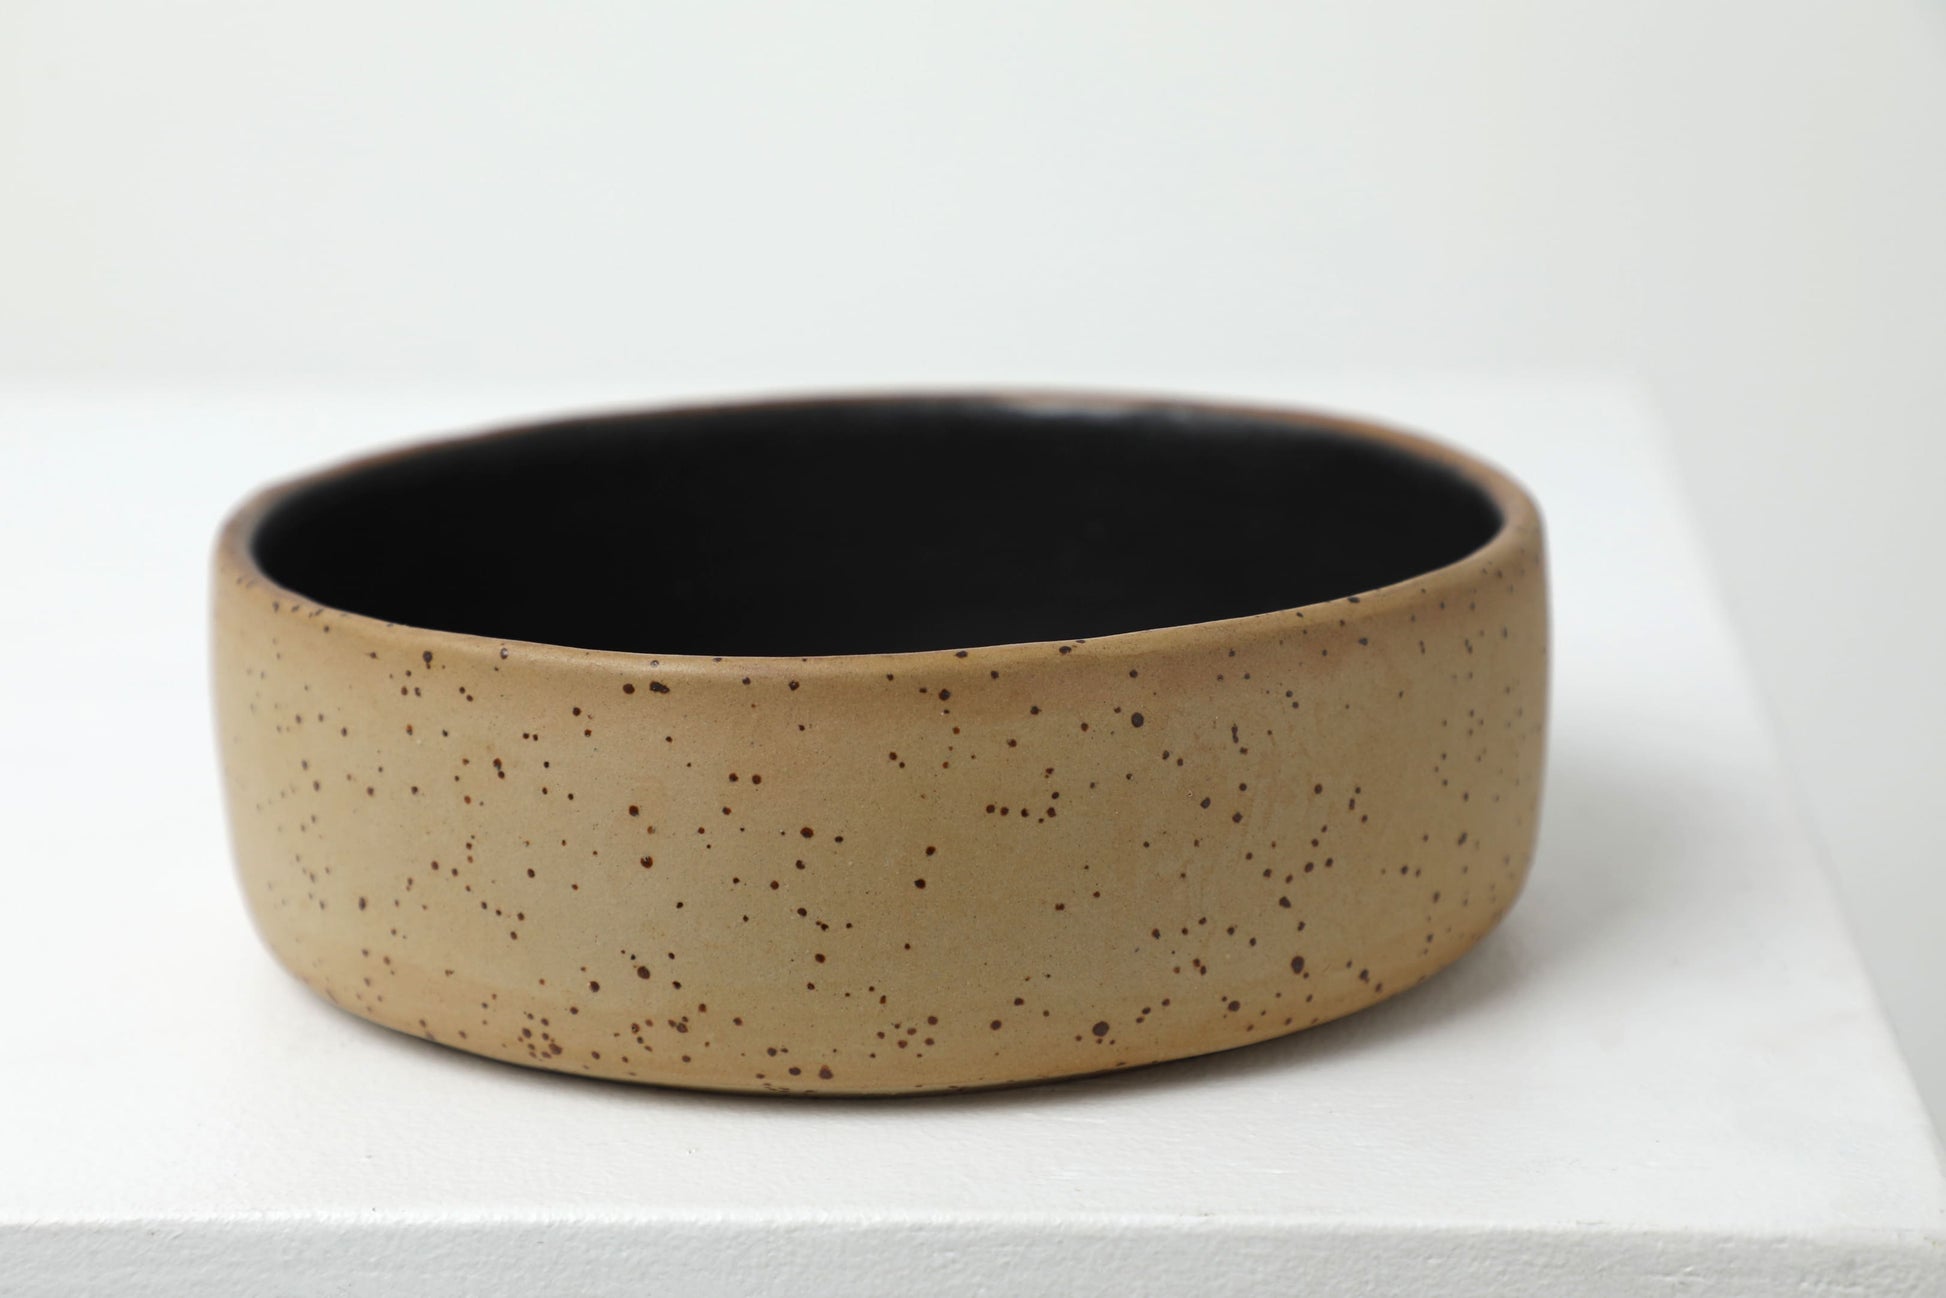 Handmade ceramic dog bowls | RAW+BLACK - premium dog goods handmade in Europe by animalistus